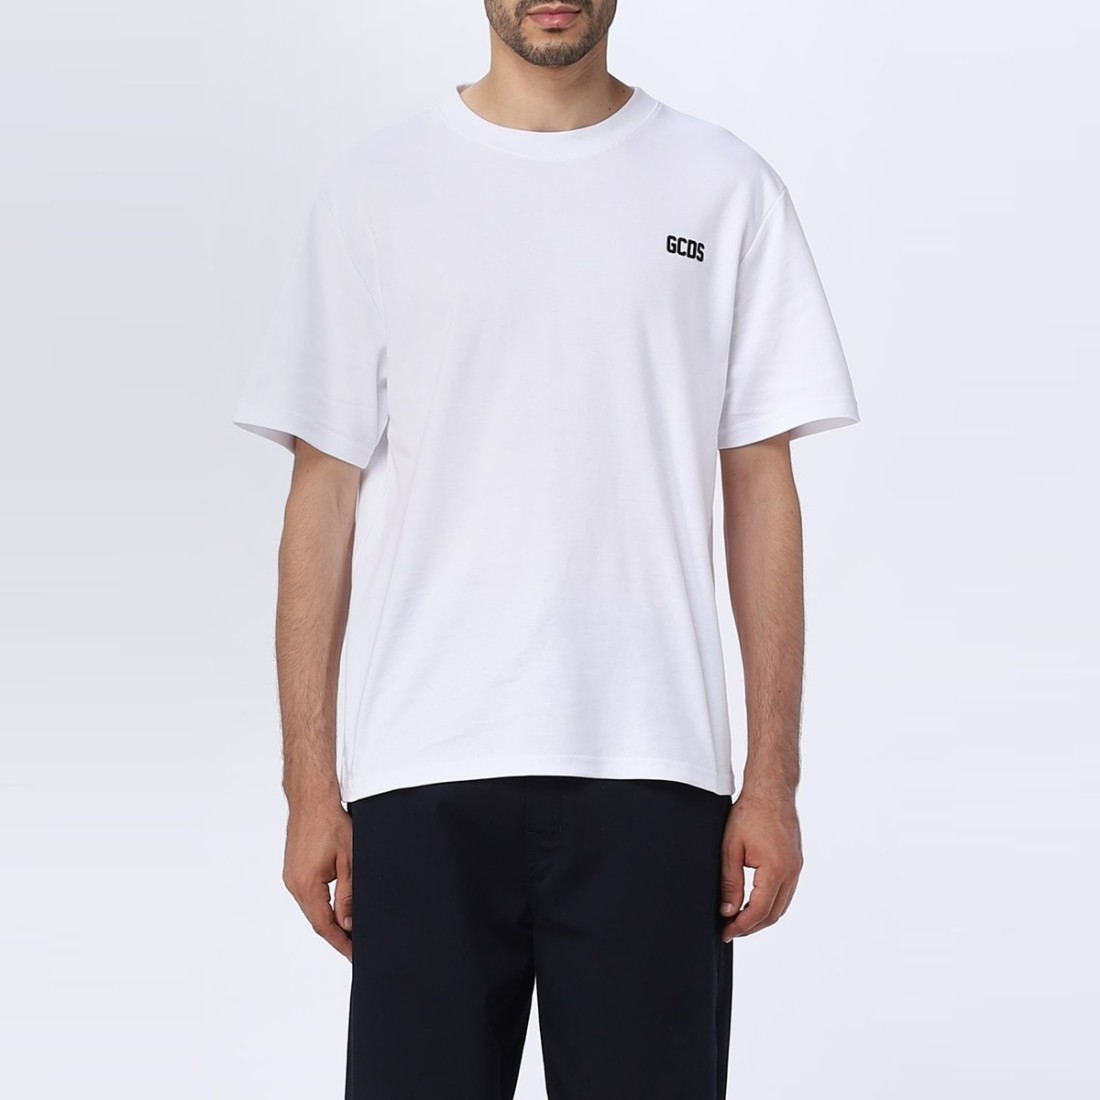 Image of GCDS - T-shirt con logo - Colore: Bianco,Taglia: L